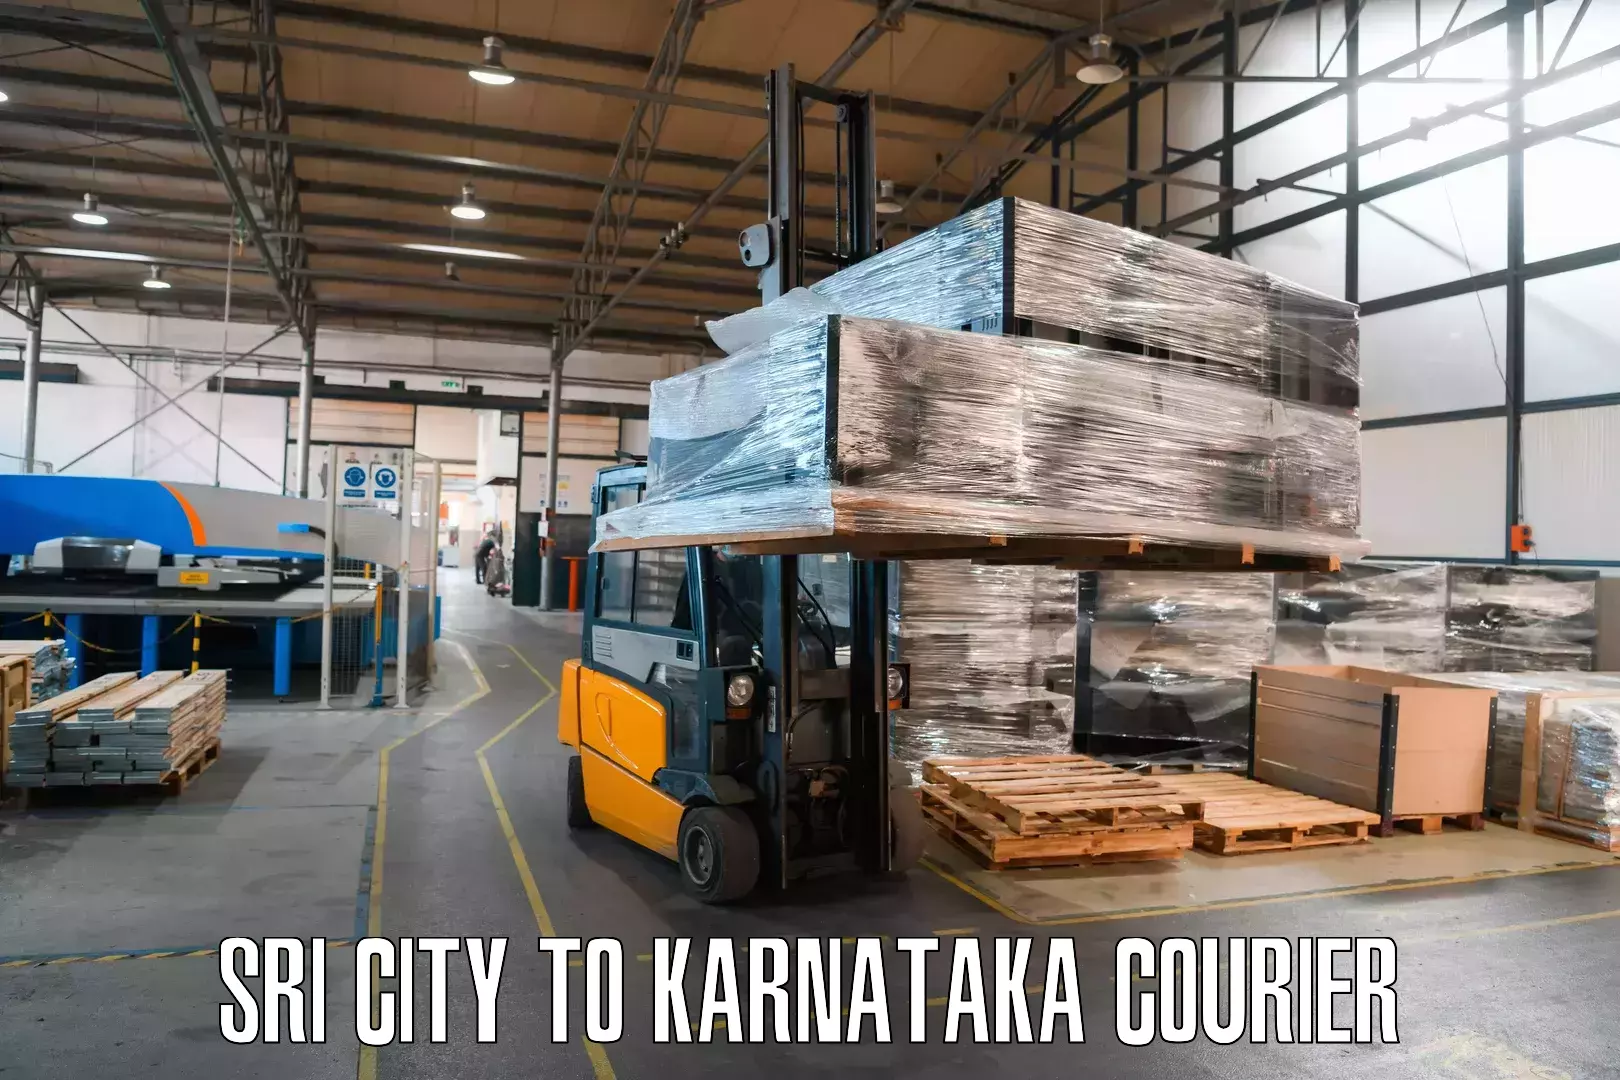 Reliable courier service Sri City to Hunsur